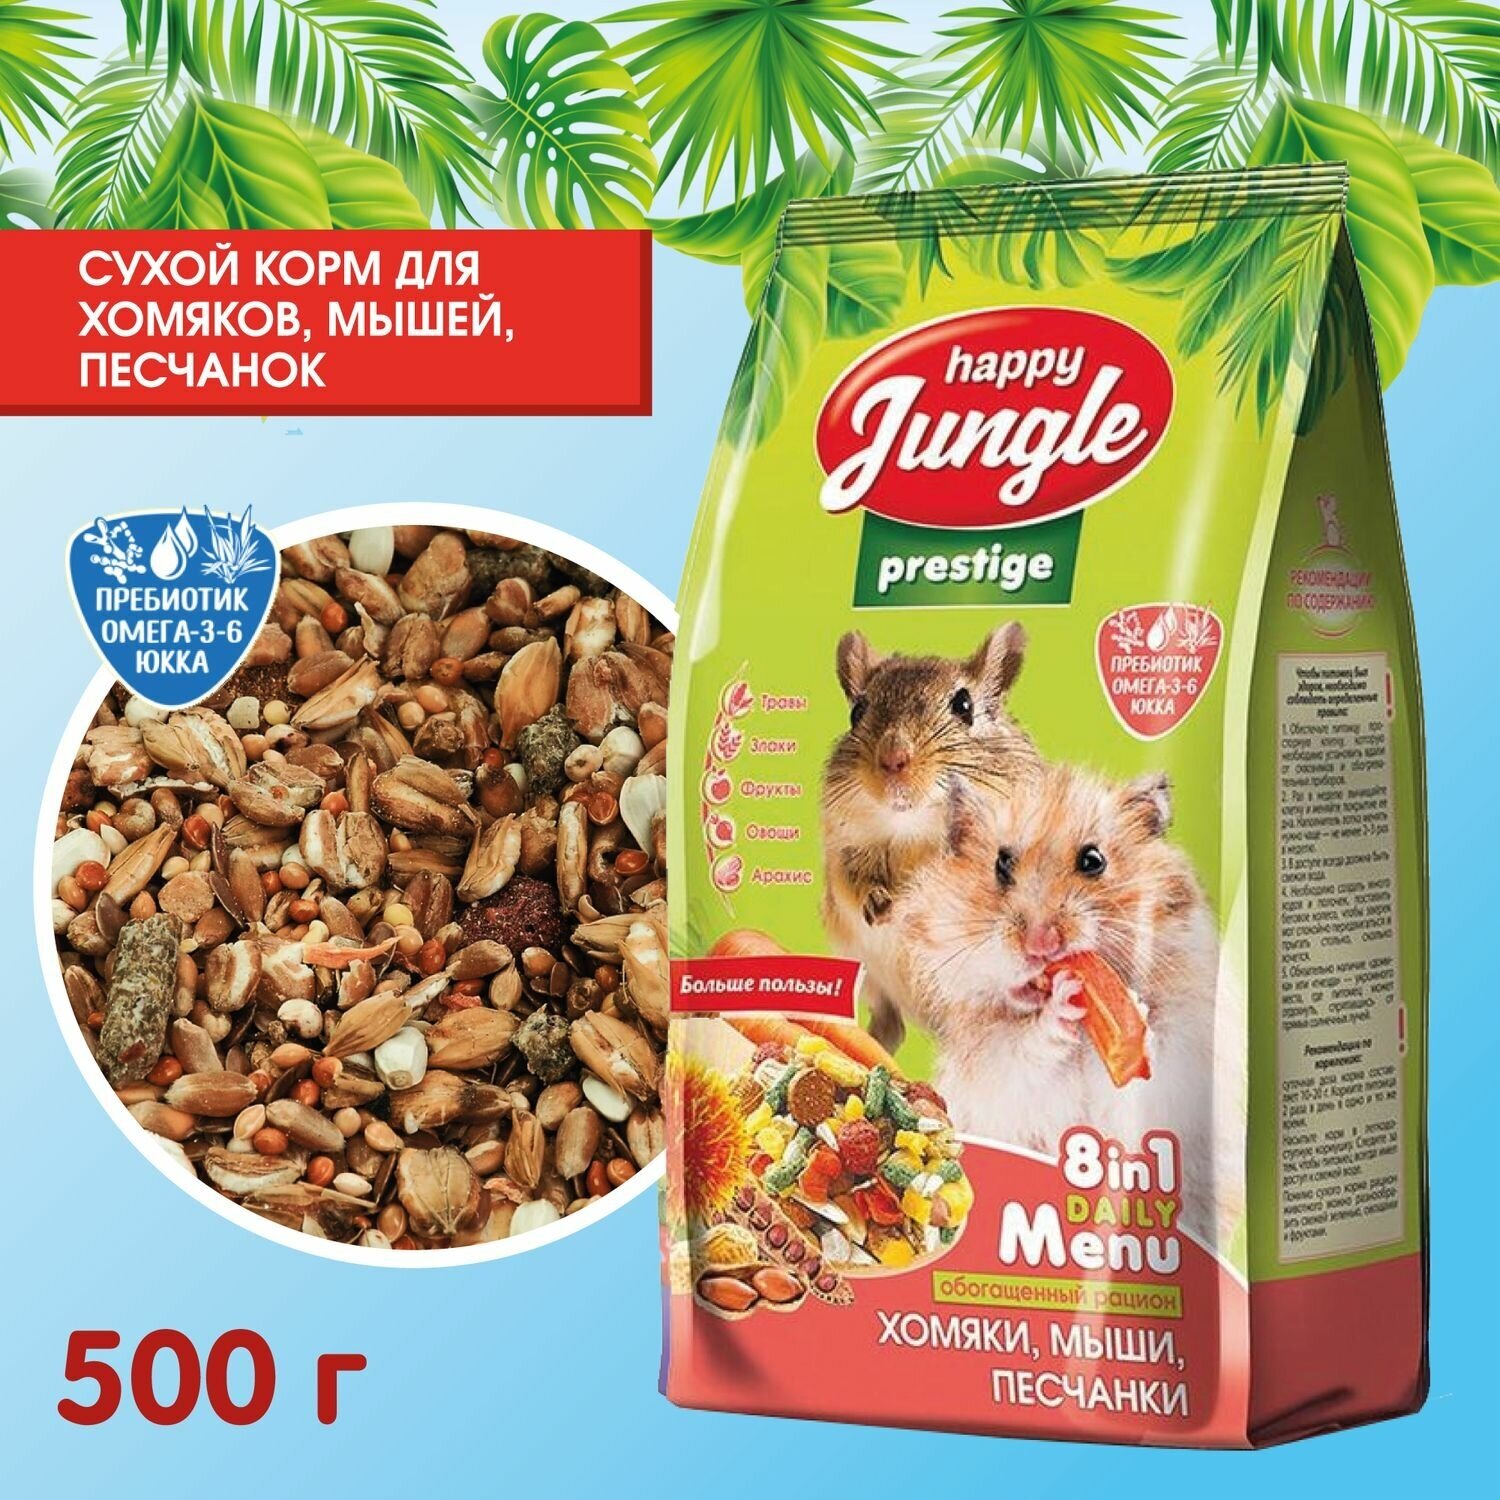 Престиж для хомяков, мышей, песчанок 500г Happy Jungle - фото №9